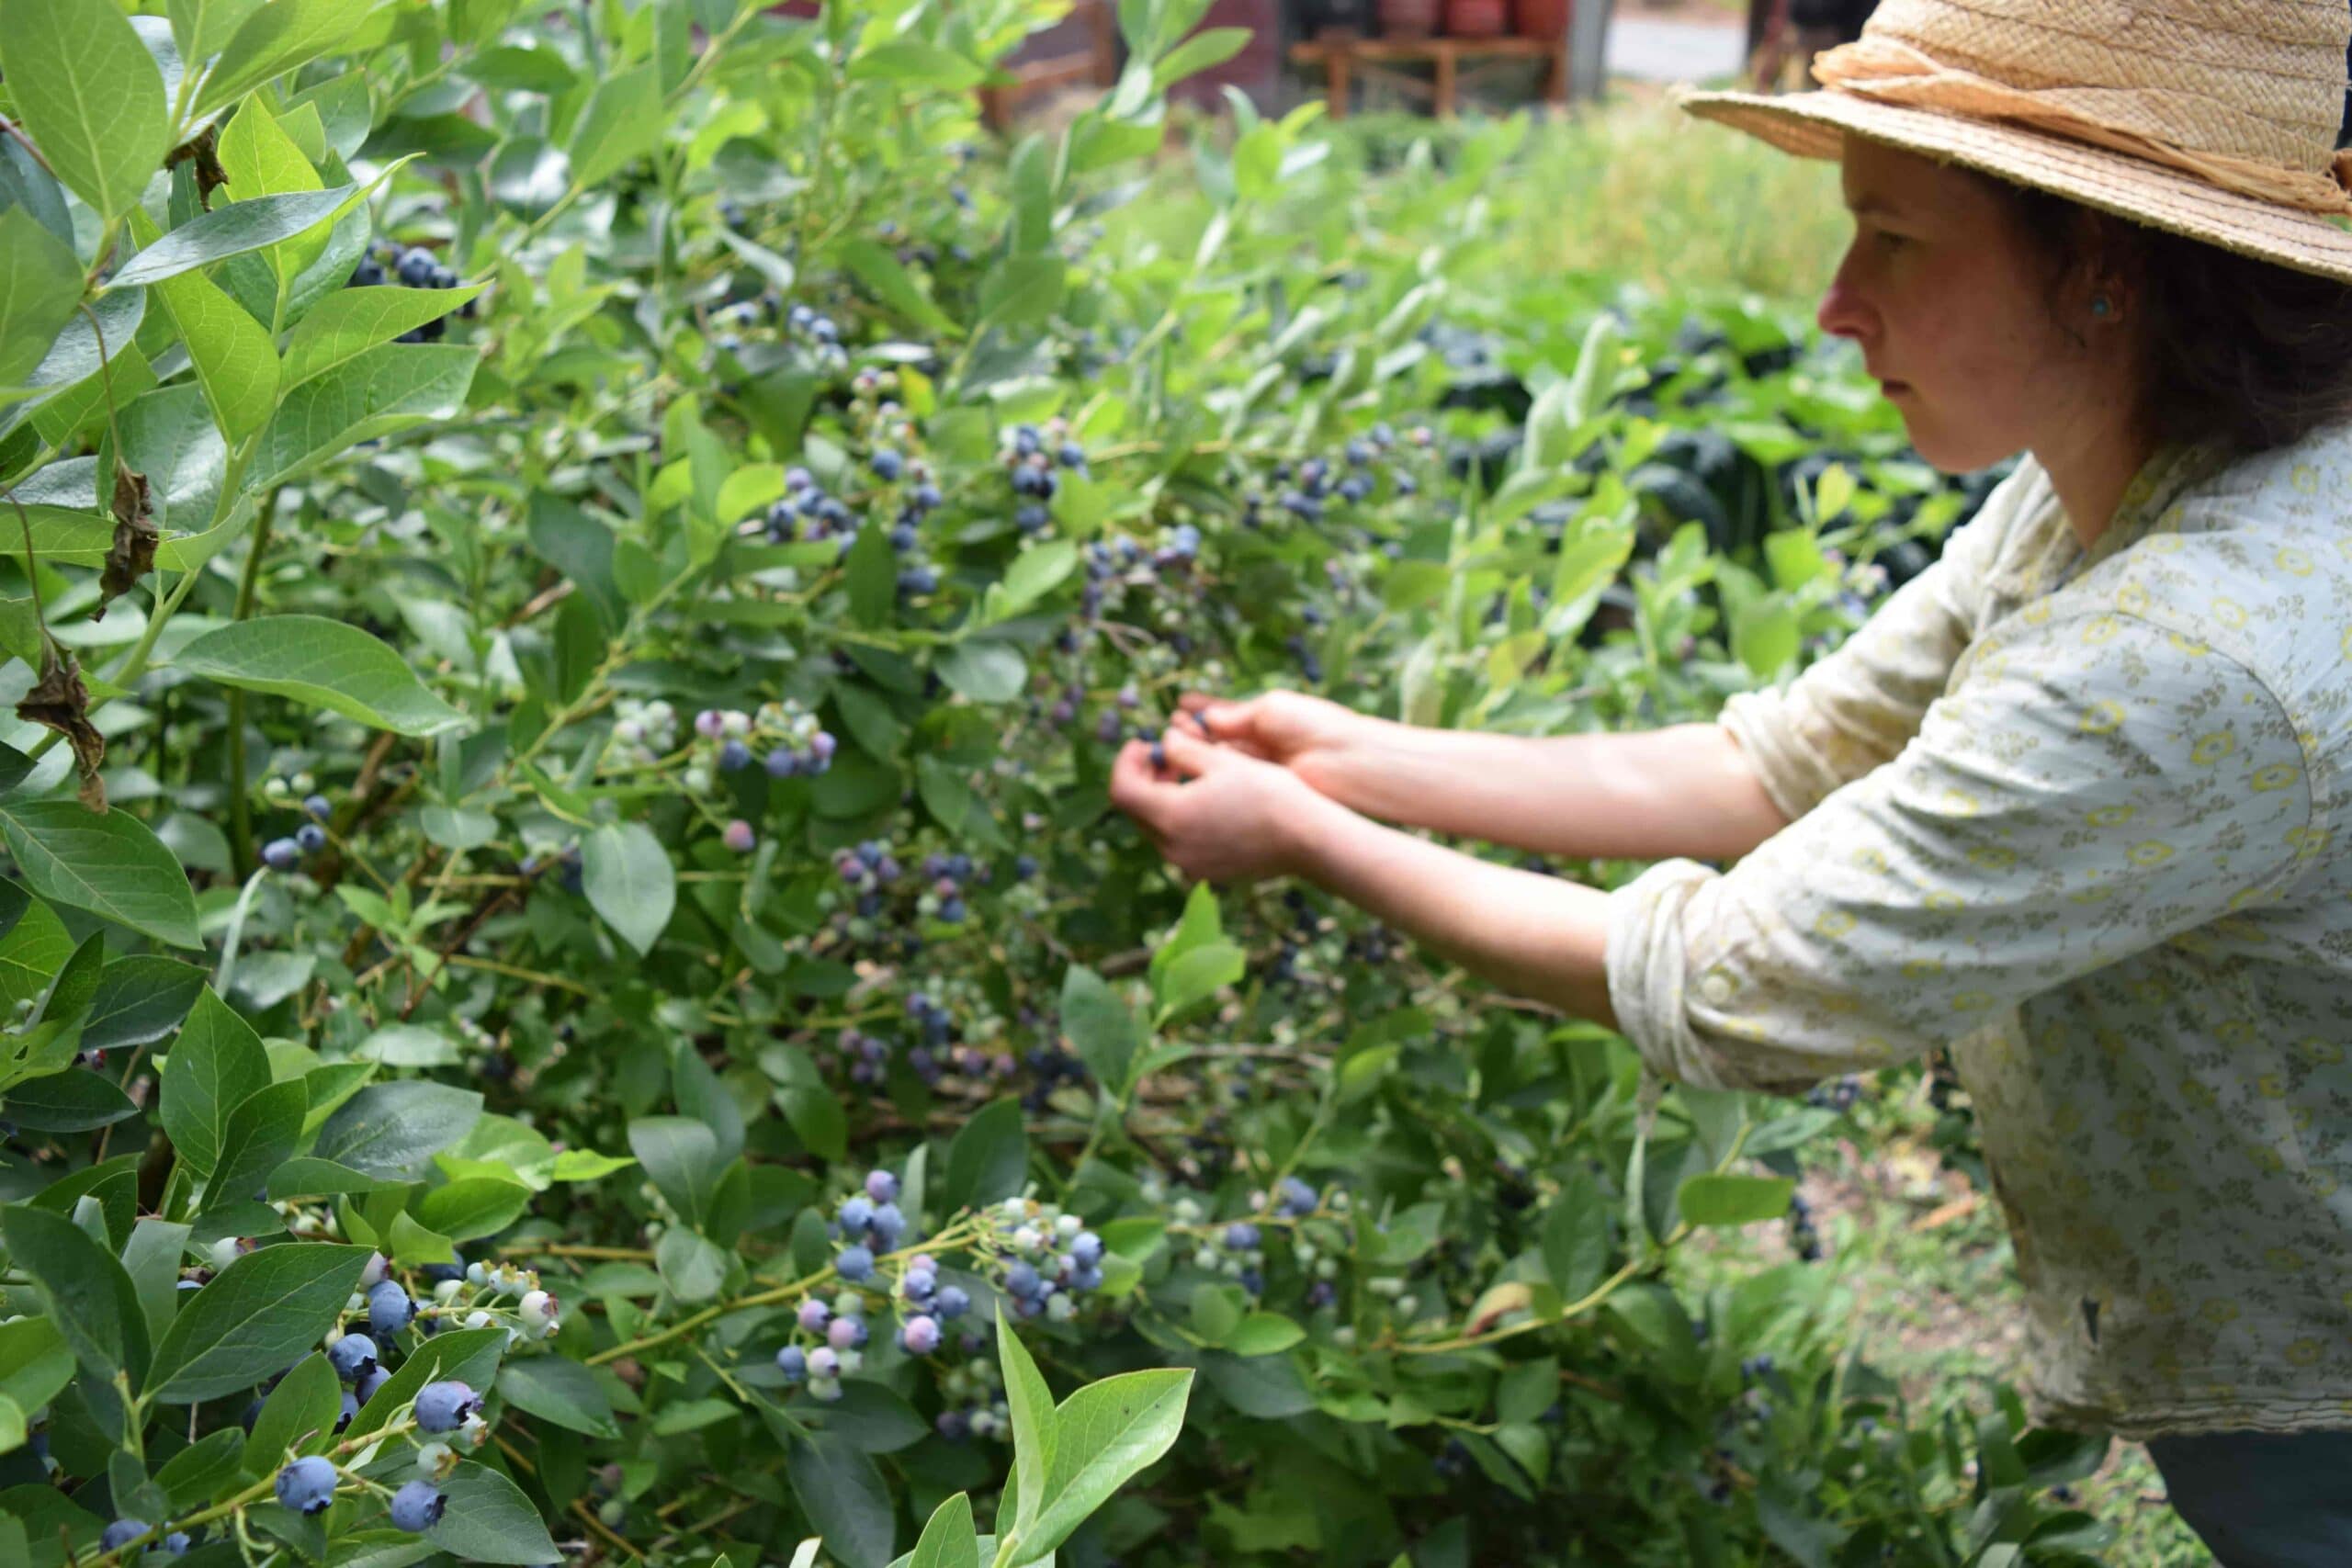 Alexia Allen of Hawthorn Farm harvests berries in her homestead garden.